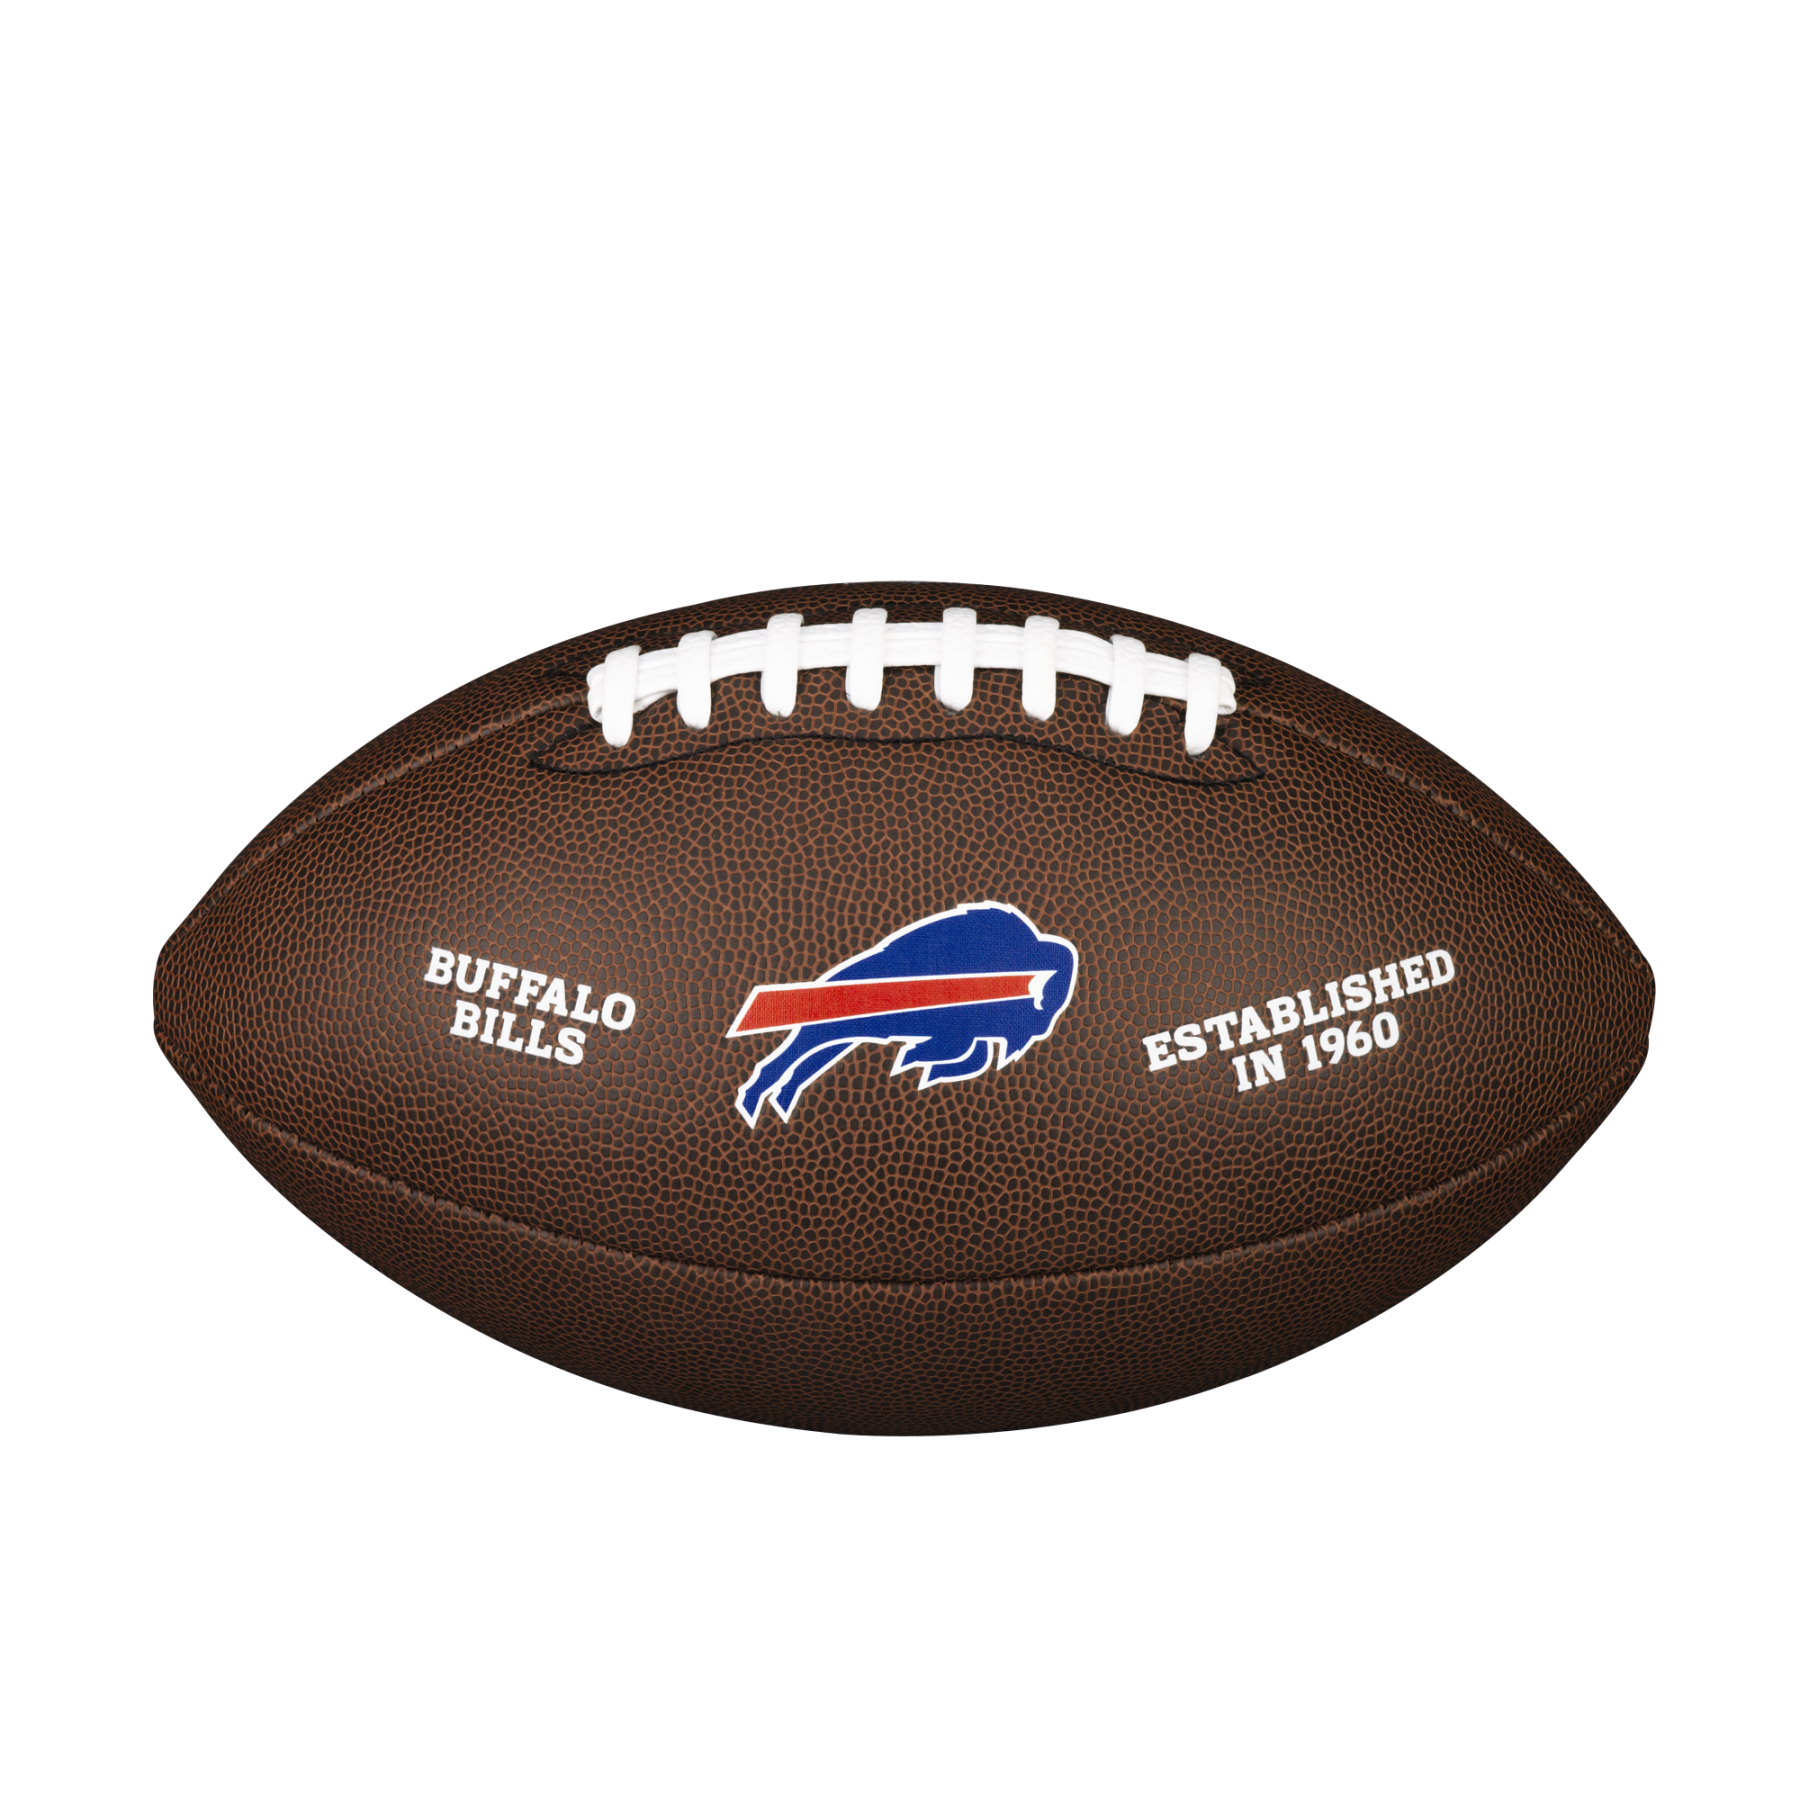 Ballon Wilson Bills NFL Licensed